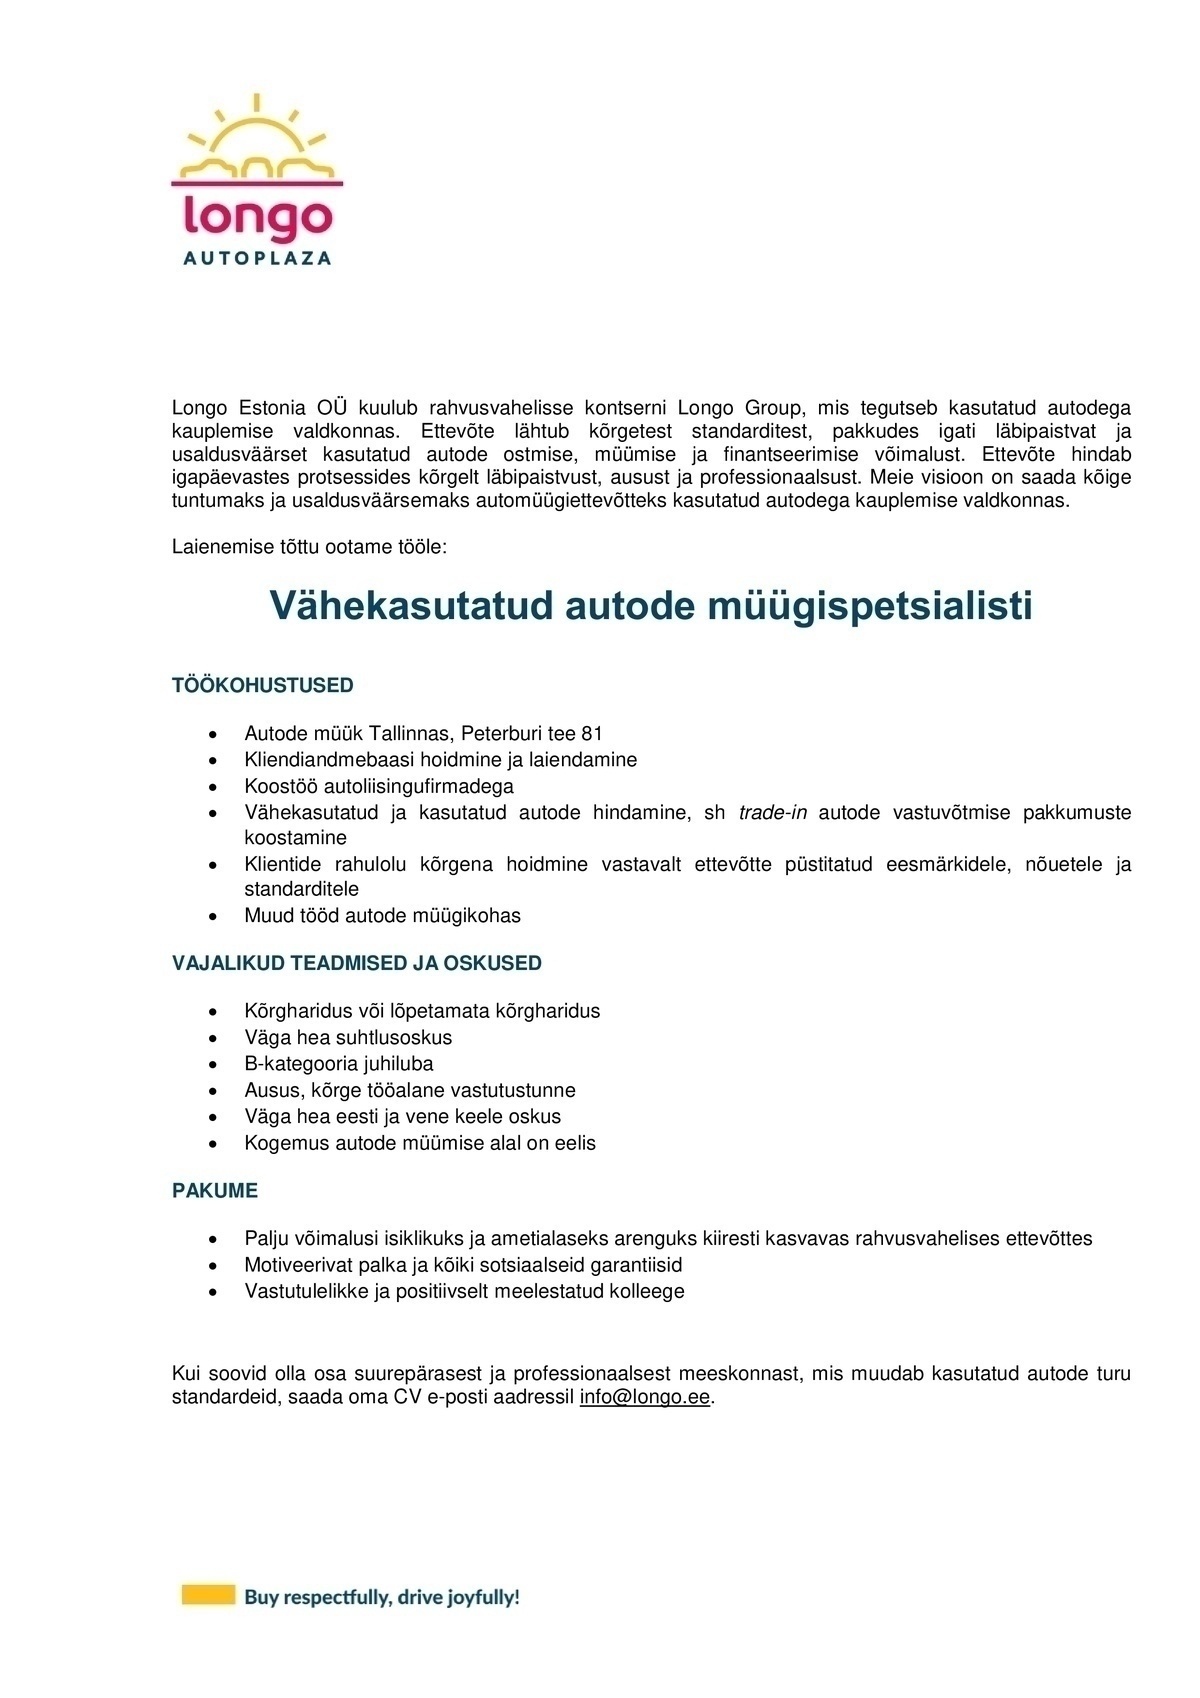 Longo Estonia OÜ Vähekasutatud autode müügispetsialist